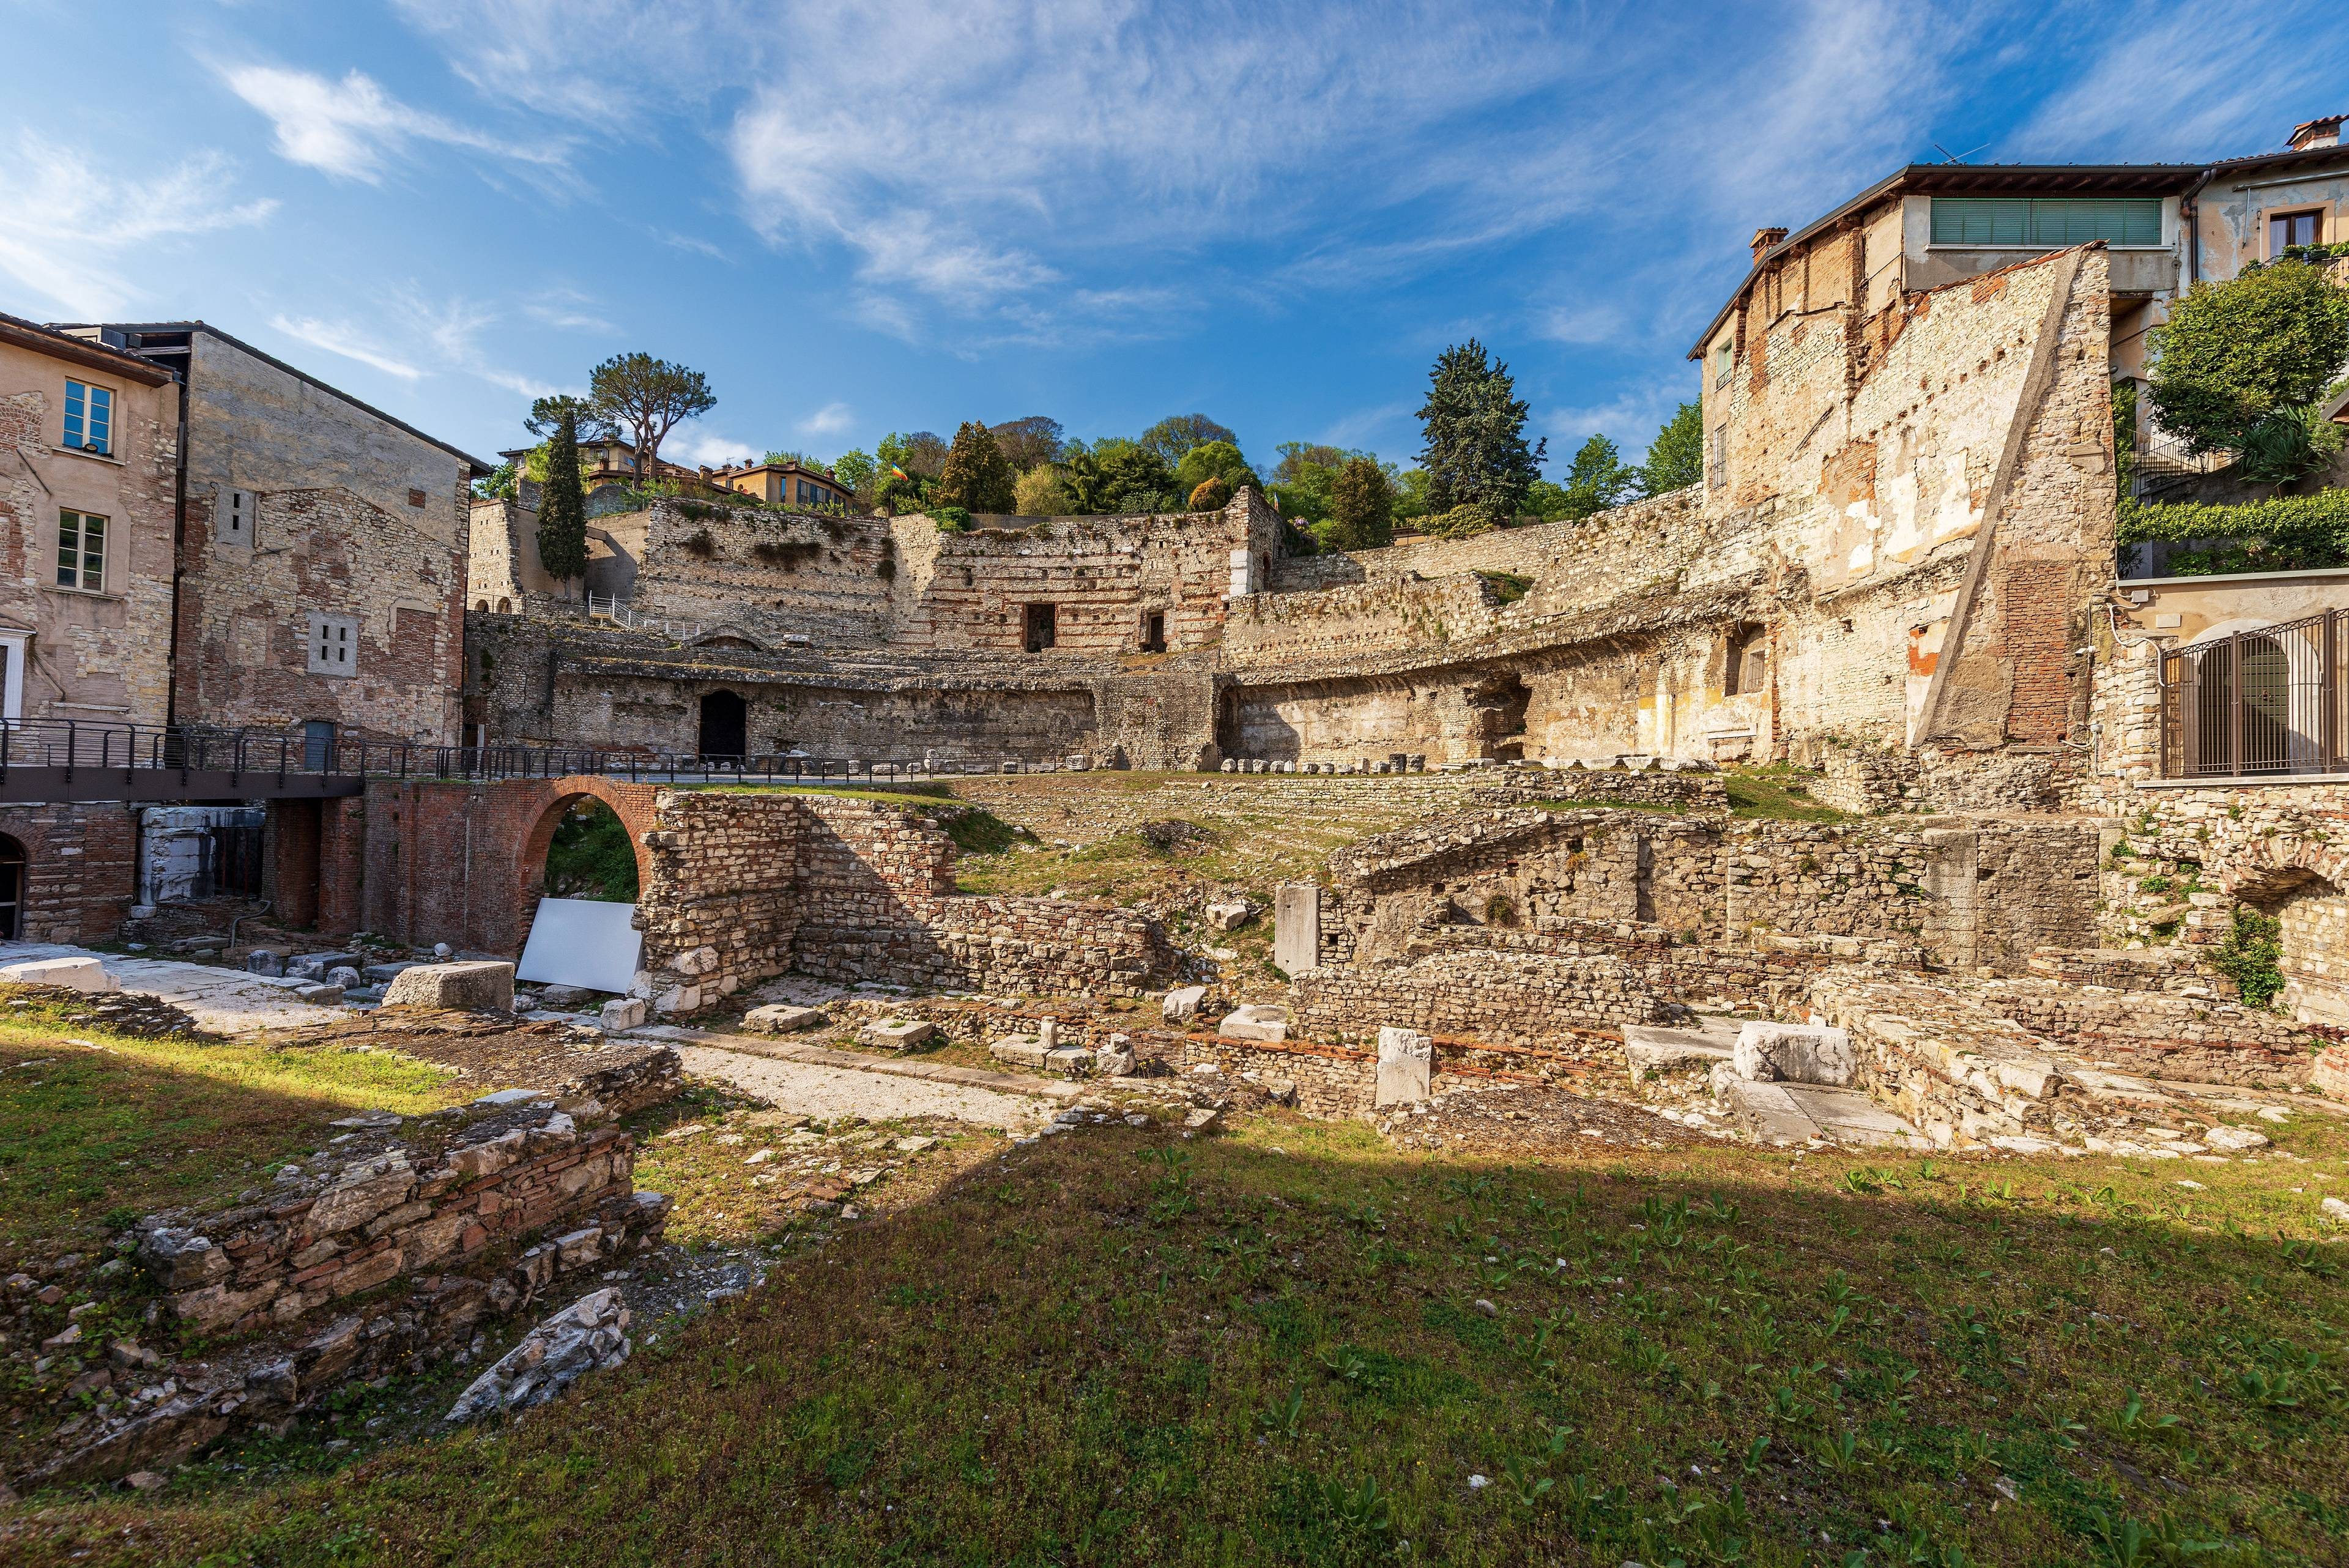 Roman Theatre of Brescia